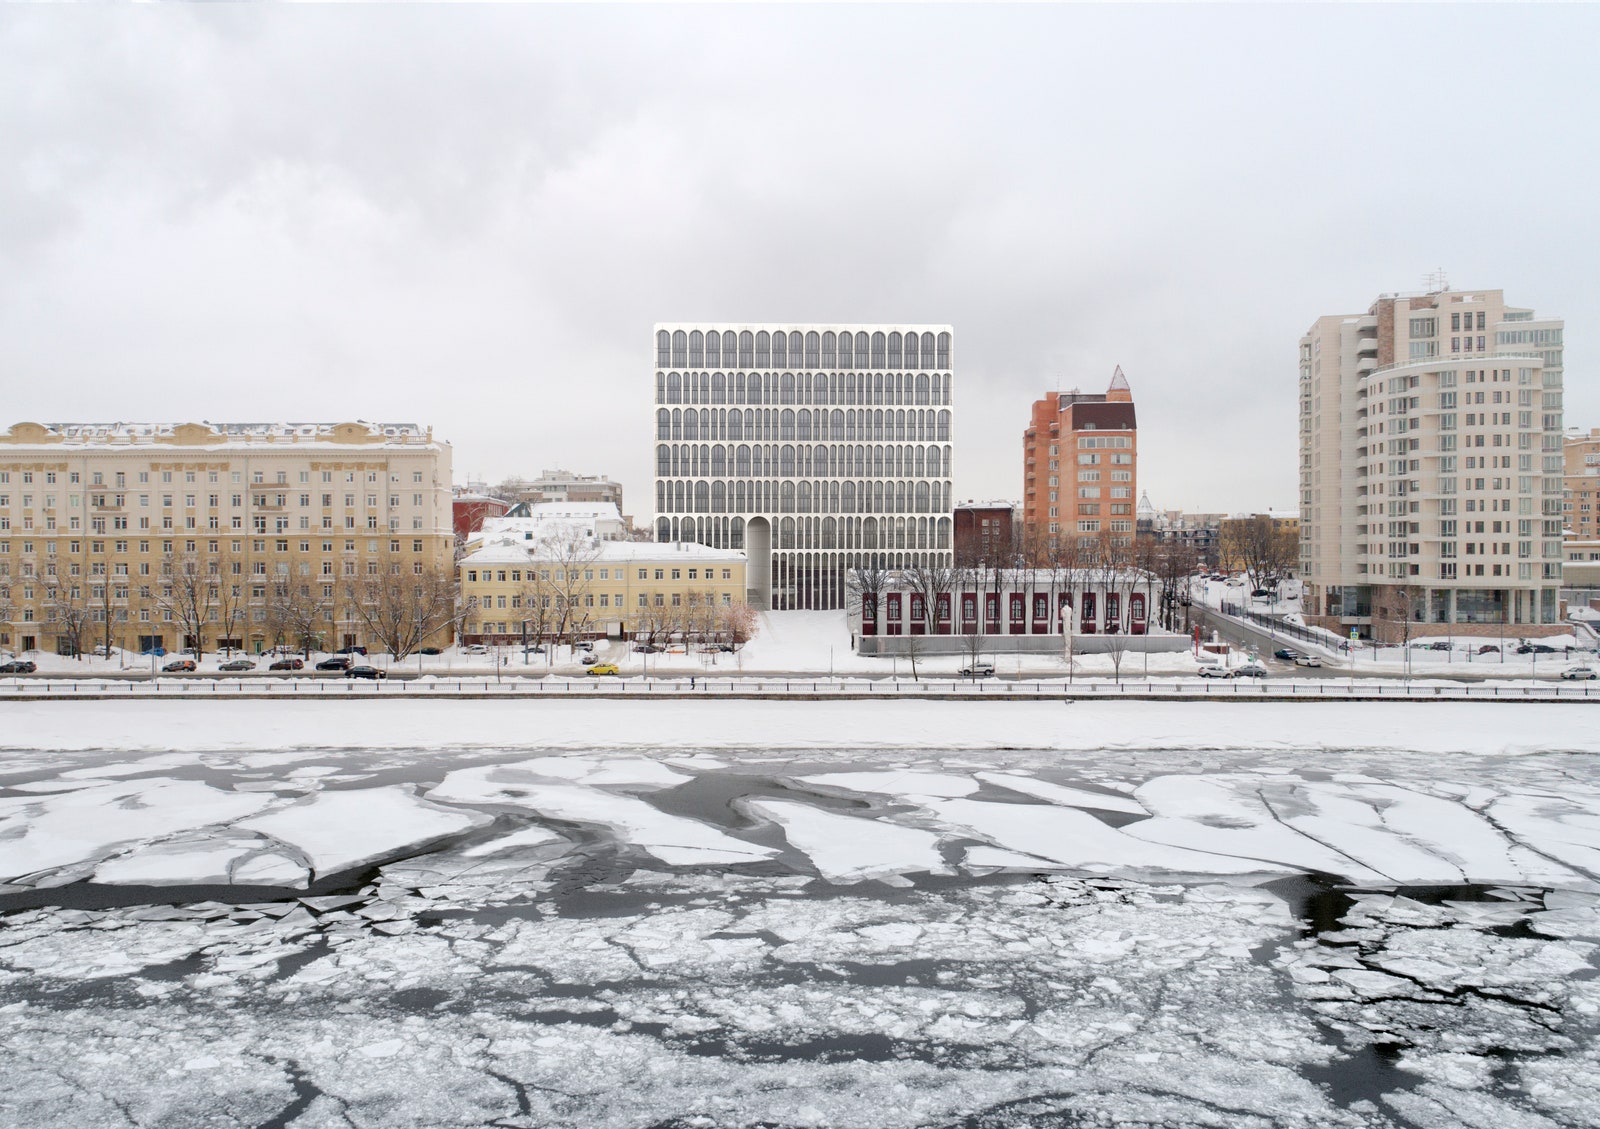 Дом Brodsky в Хамовниках фото и подробности о проекте Vesper на берегу реки Москвы